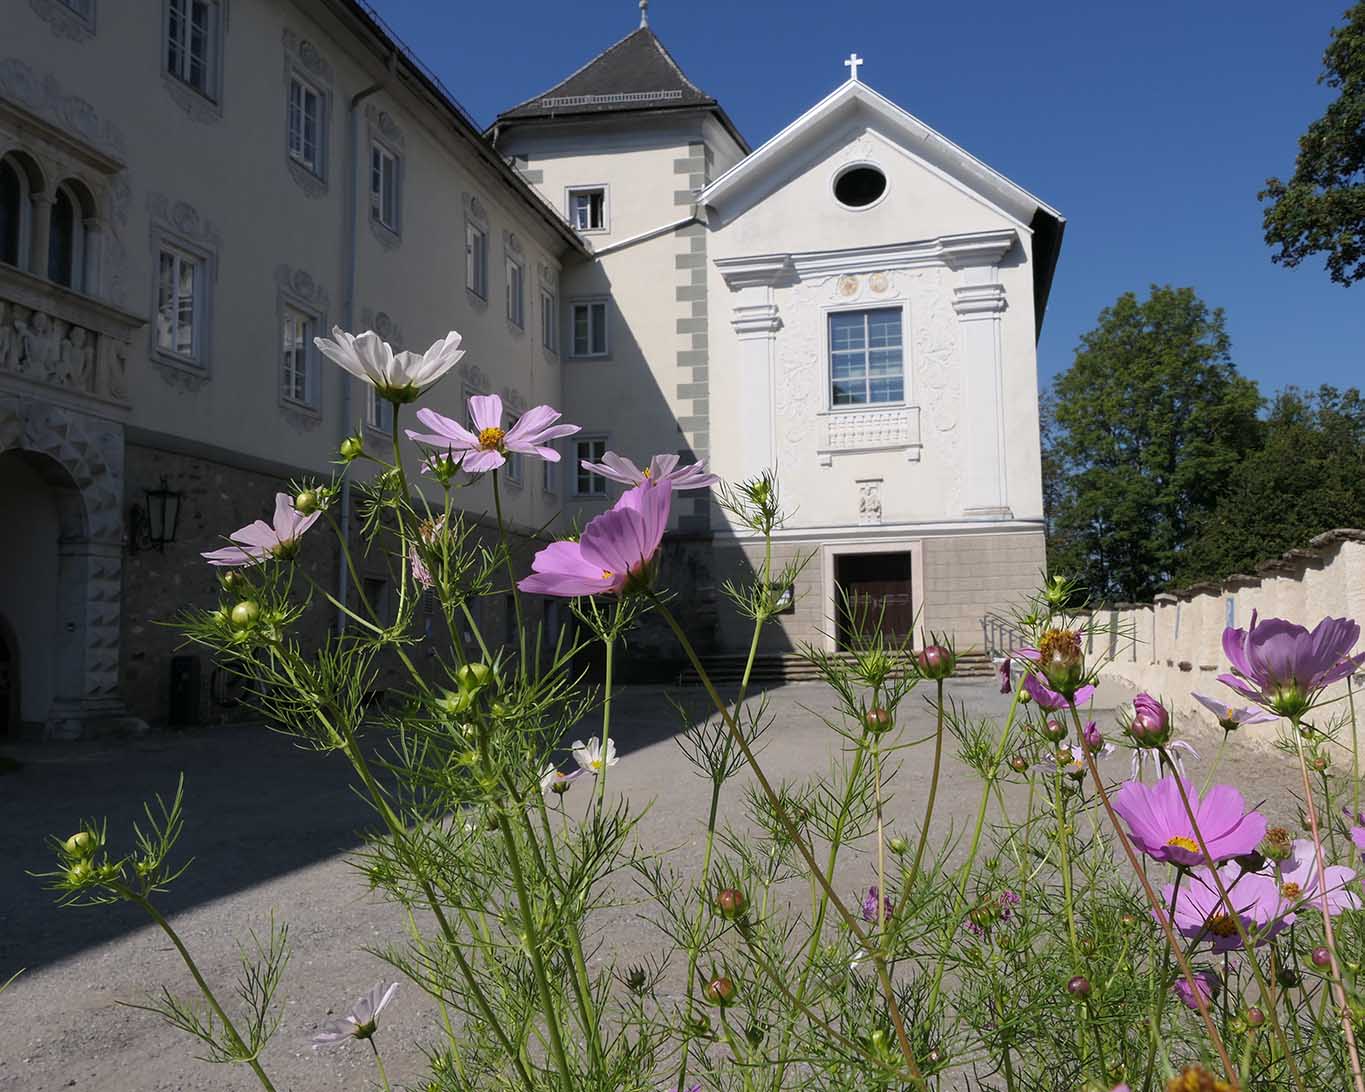 Kloster Wernberg im südwestlichen Zipfel Kärntens ist ein ganz besonderer Ort, wo Arbeiten und Innehalten zum Leben gehören.